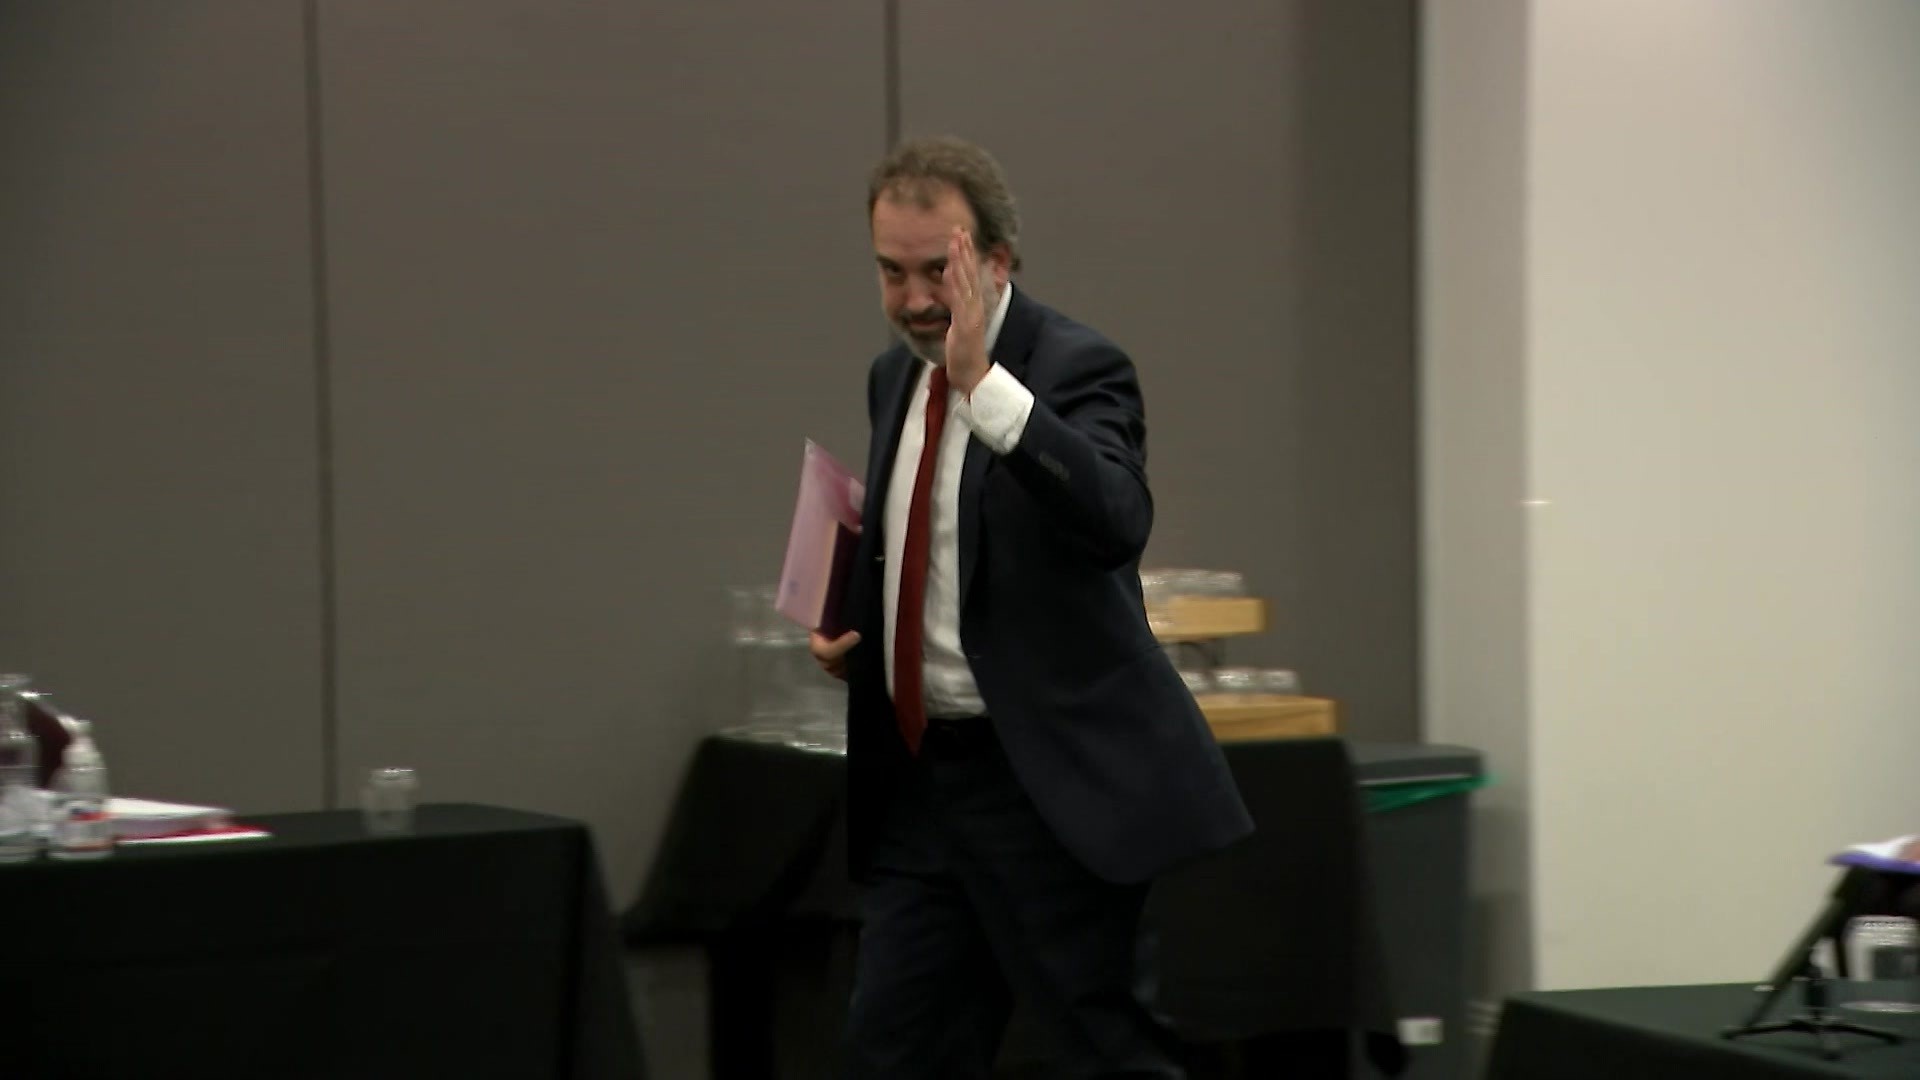 Martin Pakula salutes as he leaves the hearing.